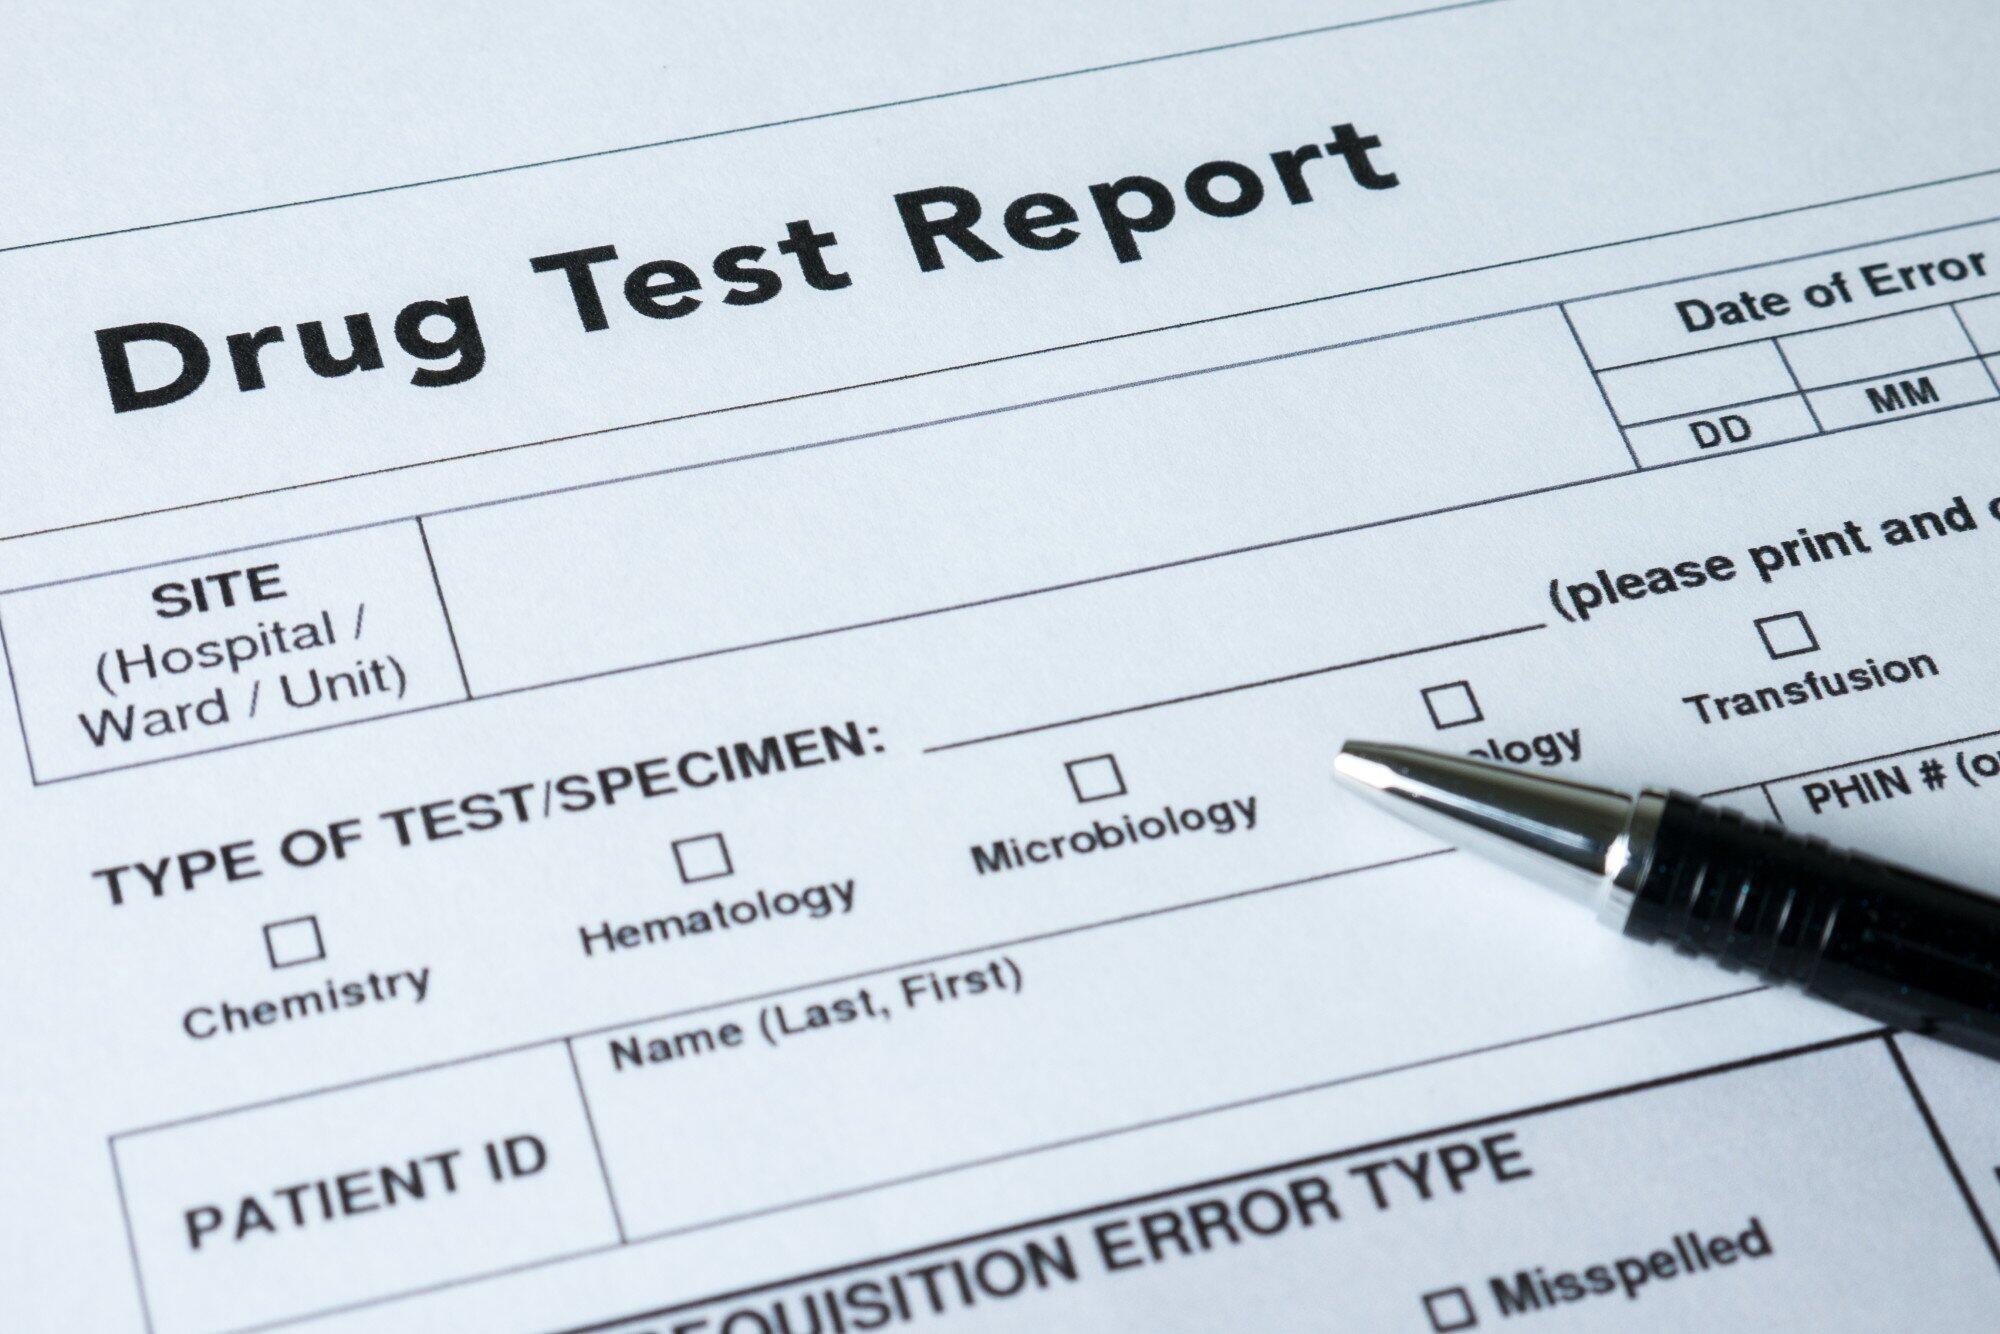 Drug-test-report